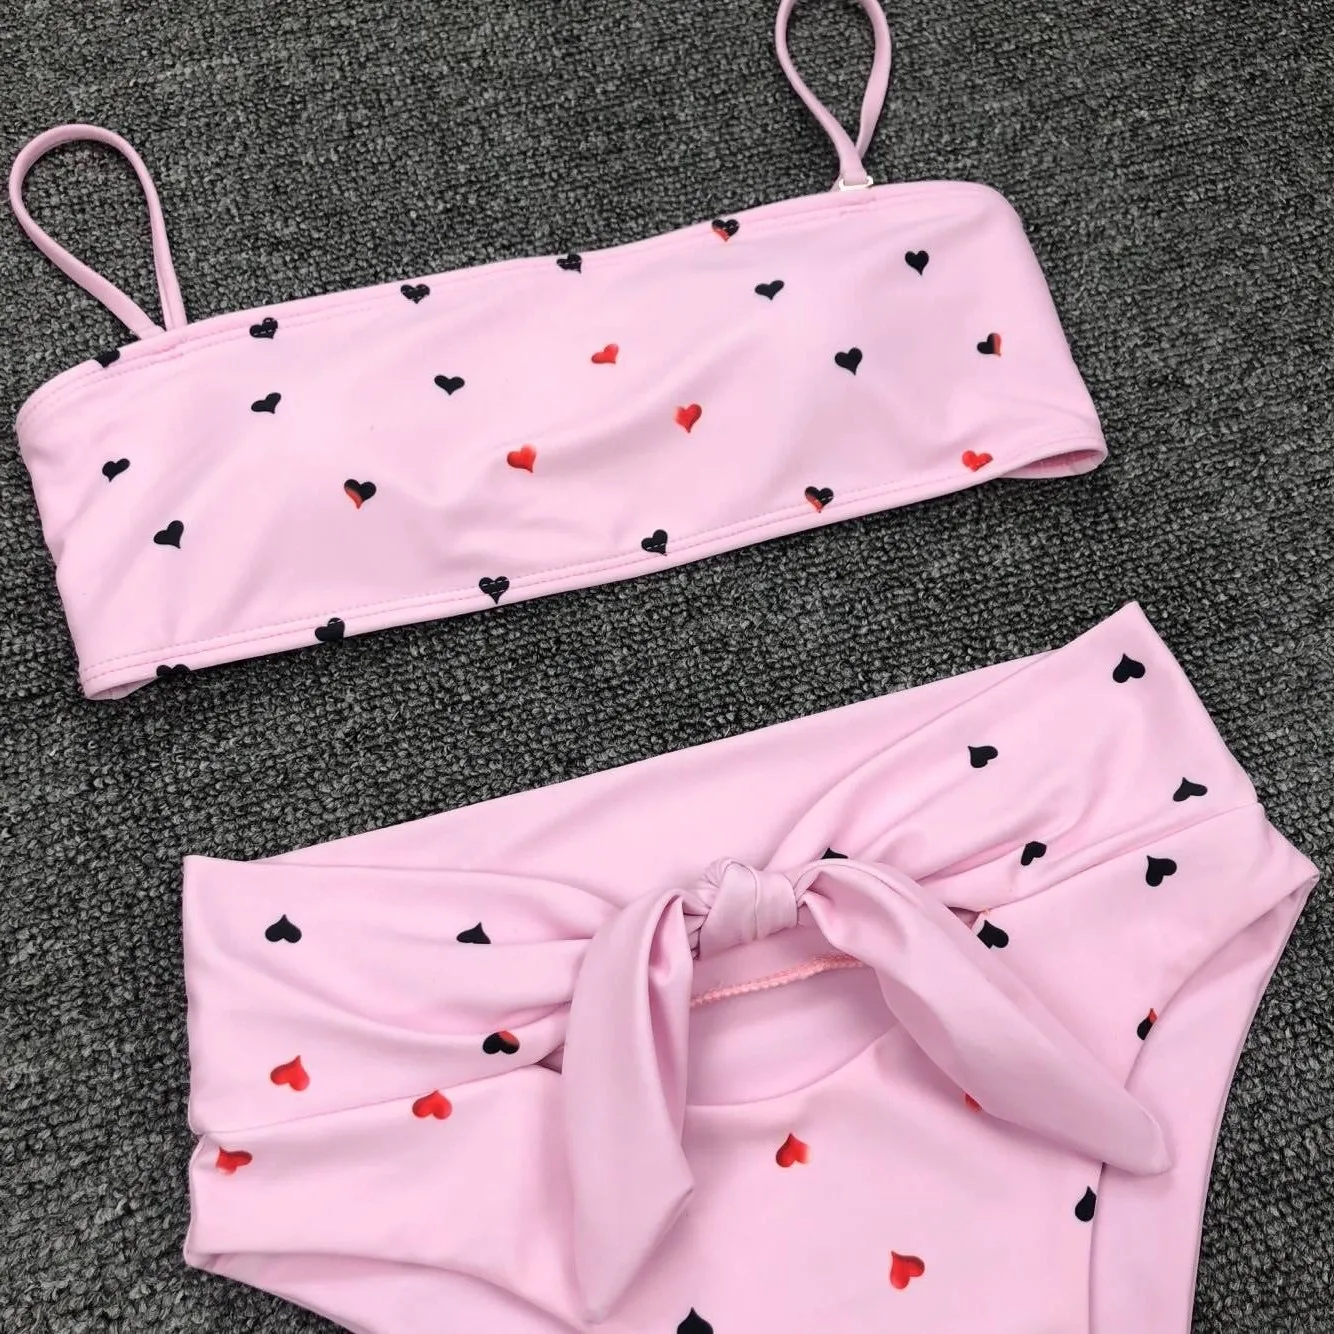 Купальник в форме сердца с принтом, розовое сексуальное бикини, женский микро бикини, набор, купальник в горошек, женский купальник, низкая талия, бандаж, пляжная одежда